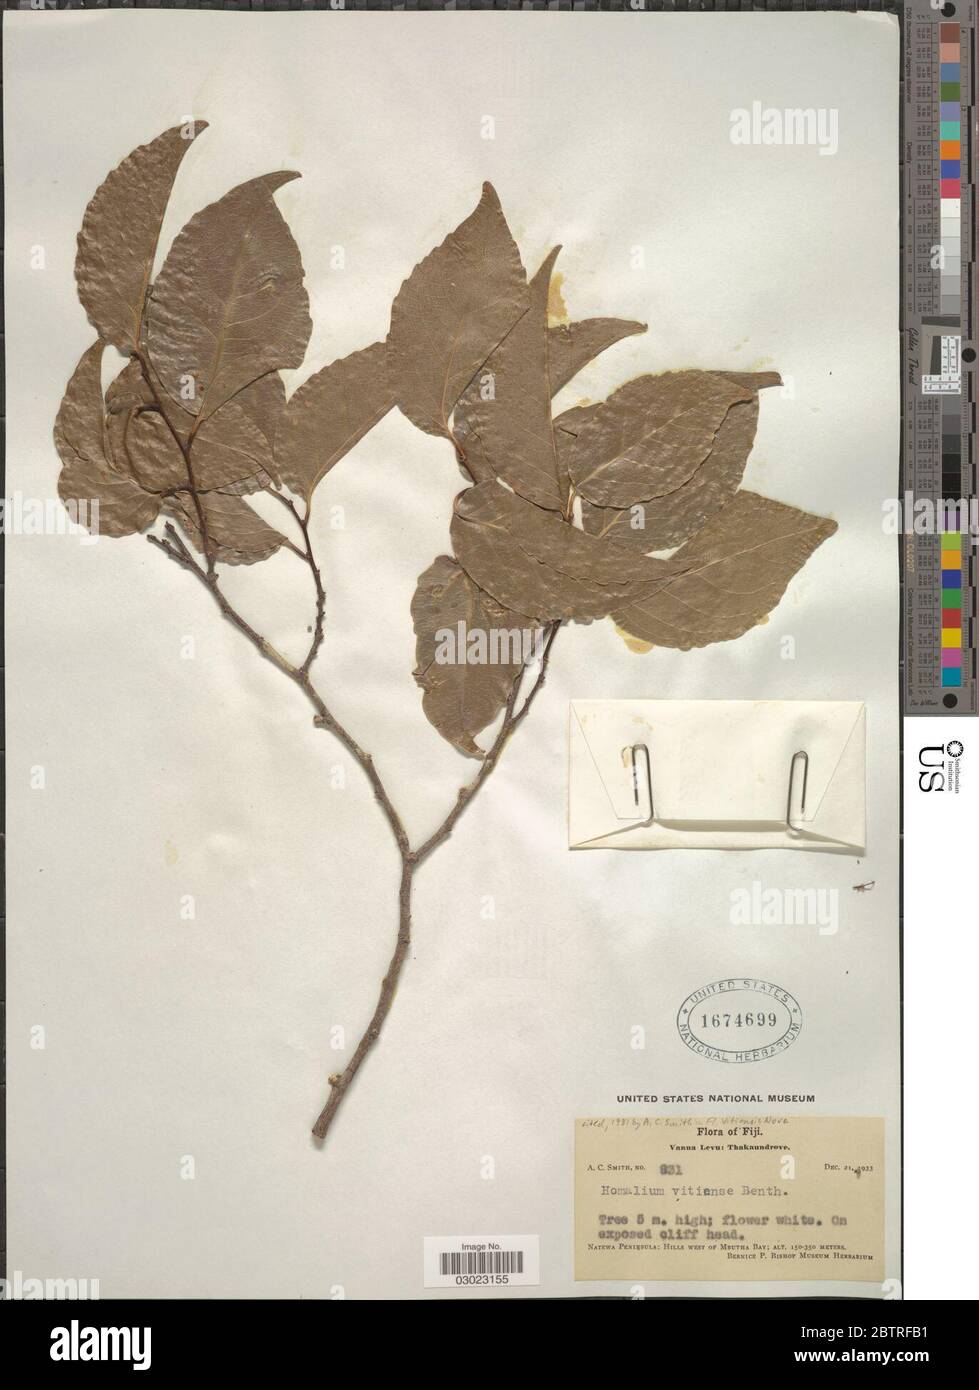 Homalium vitiense Benth. Stock Photo